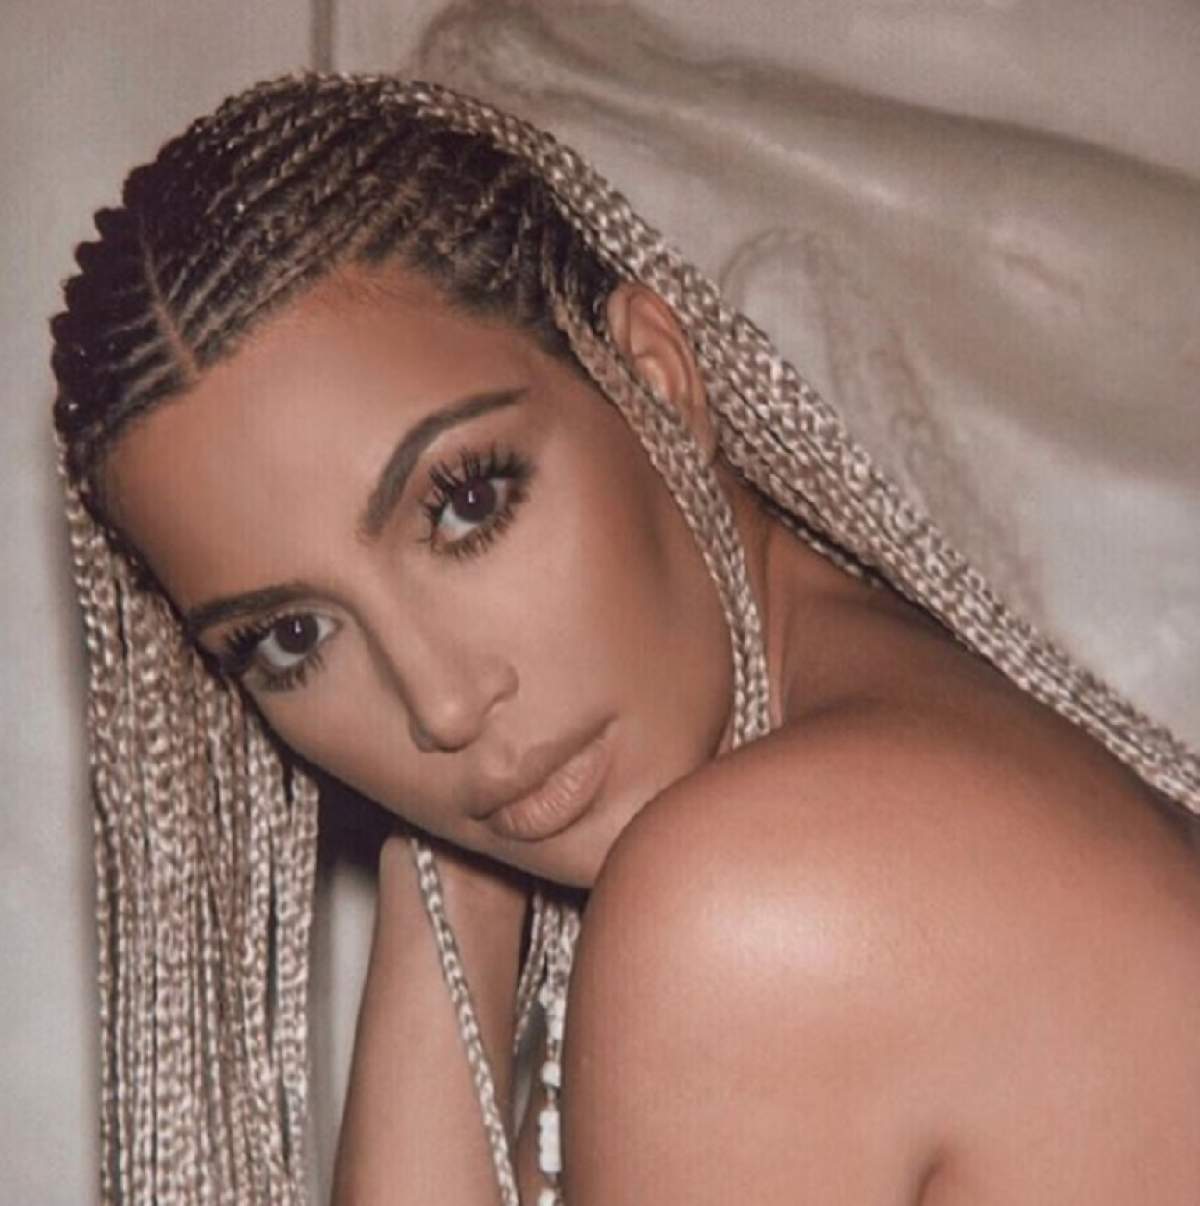 FOTO / Photoshop sau chirurgie estetică în exces? Kim Kardashian a stârnit vâlvă mare pe internet: „Își promovează fundul injectat?”